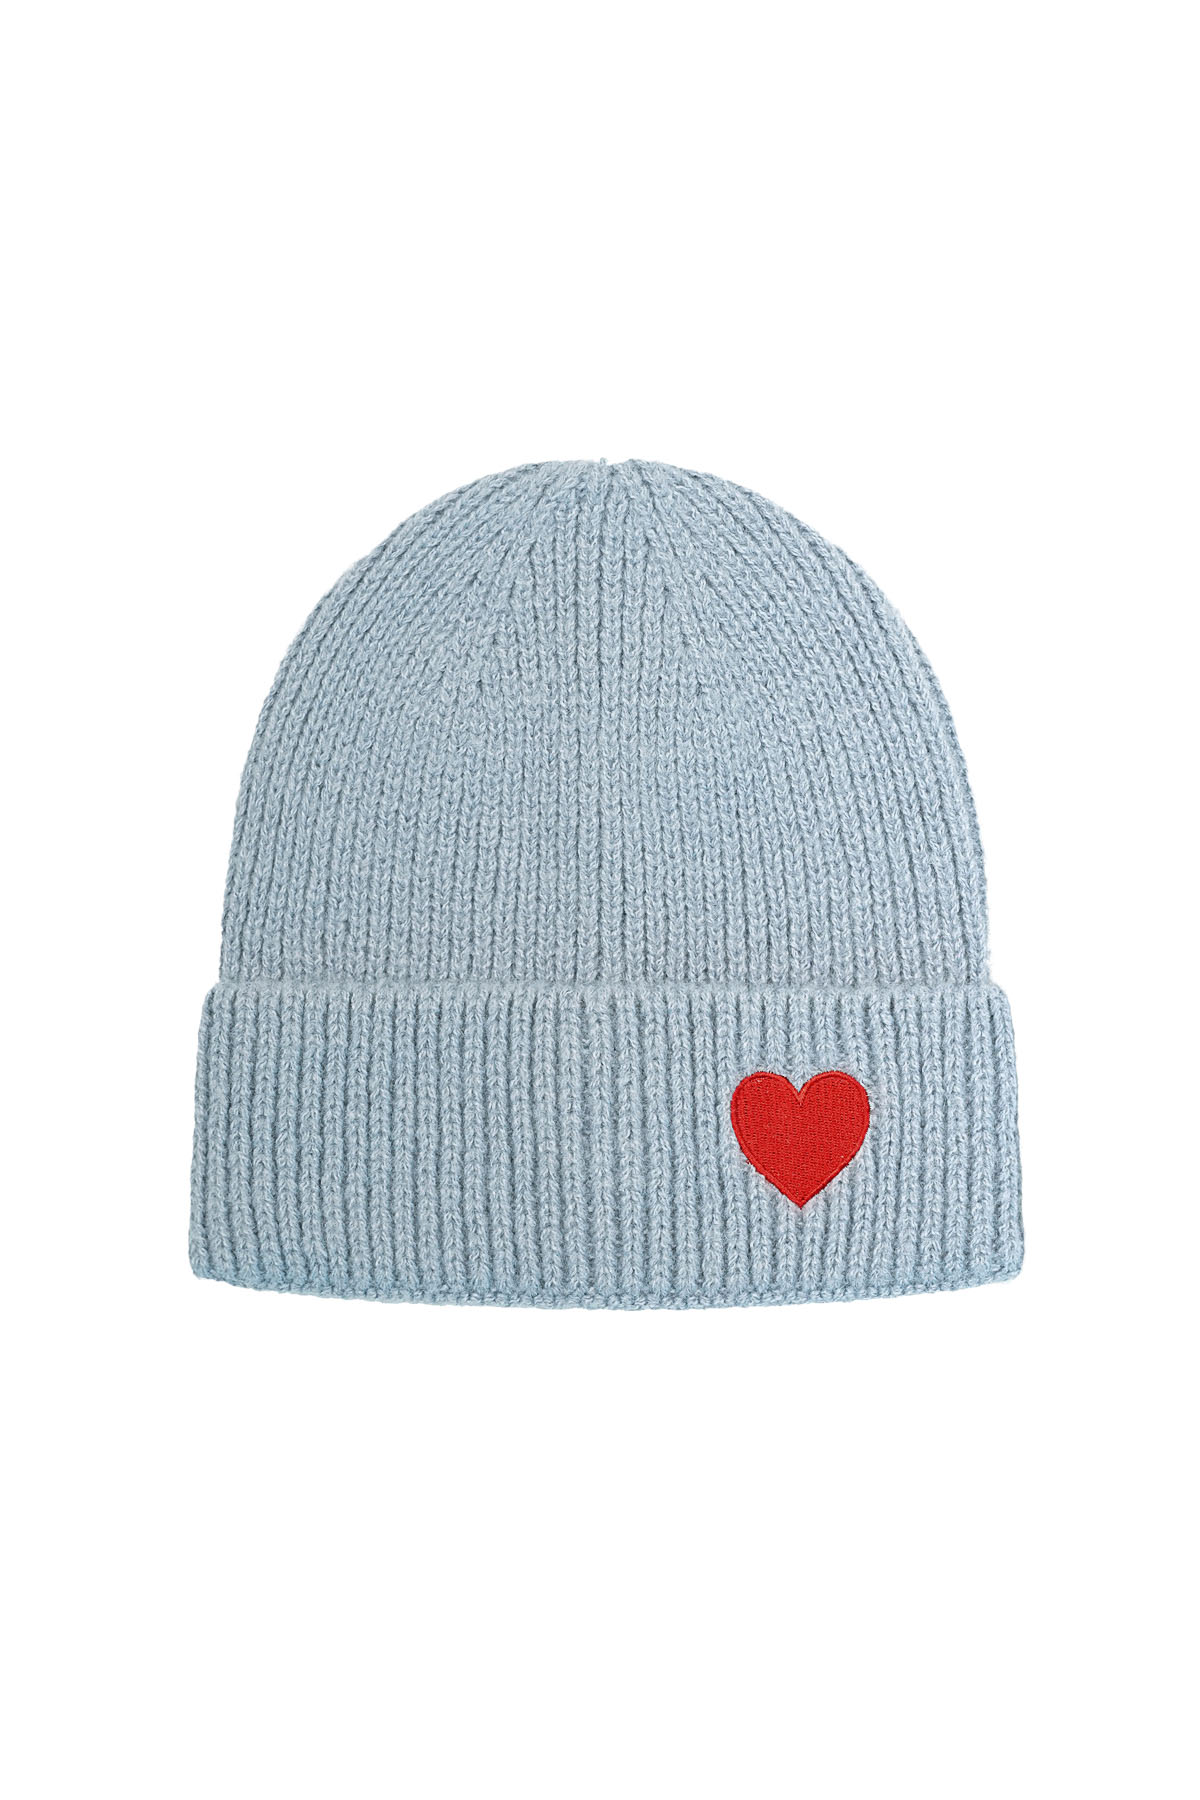 Kalp detaylı şapka - mavi h5 